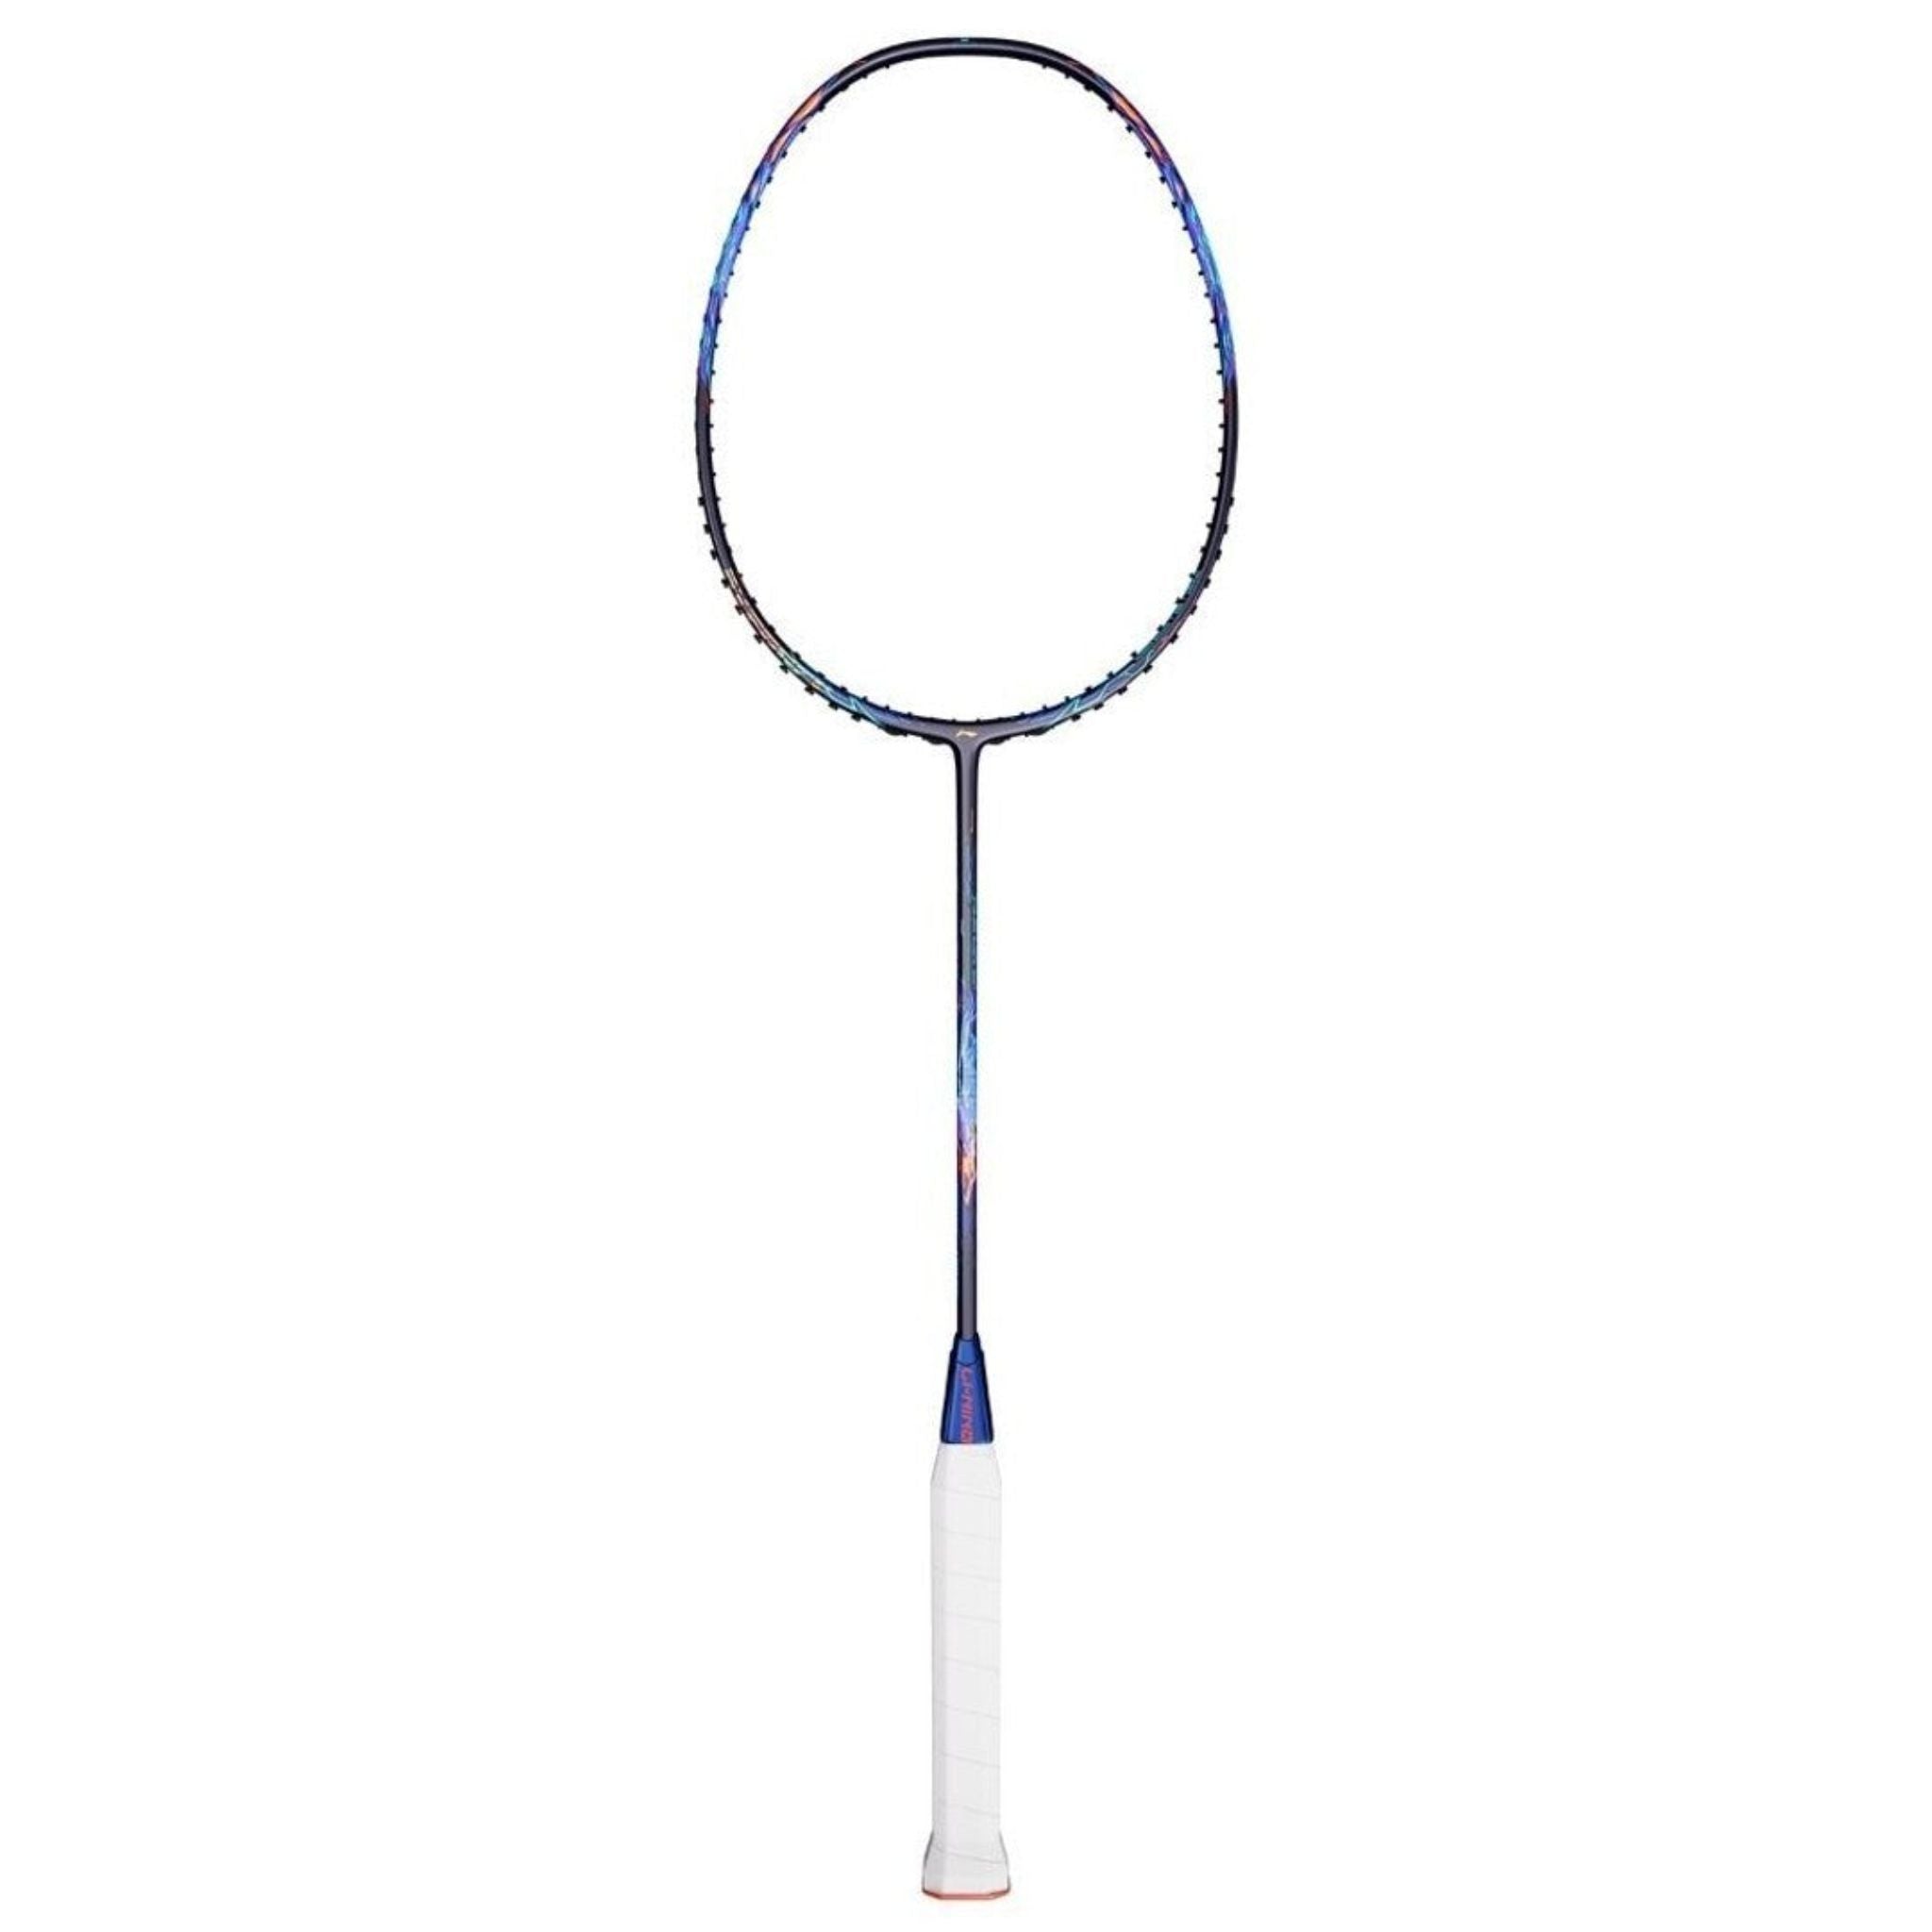 LI-NING AXFORCE 90 4U Dragon Max Badminton Racket